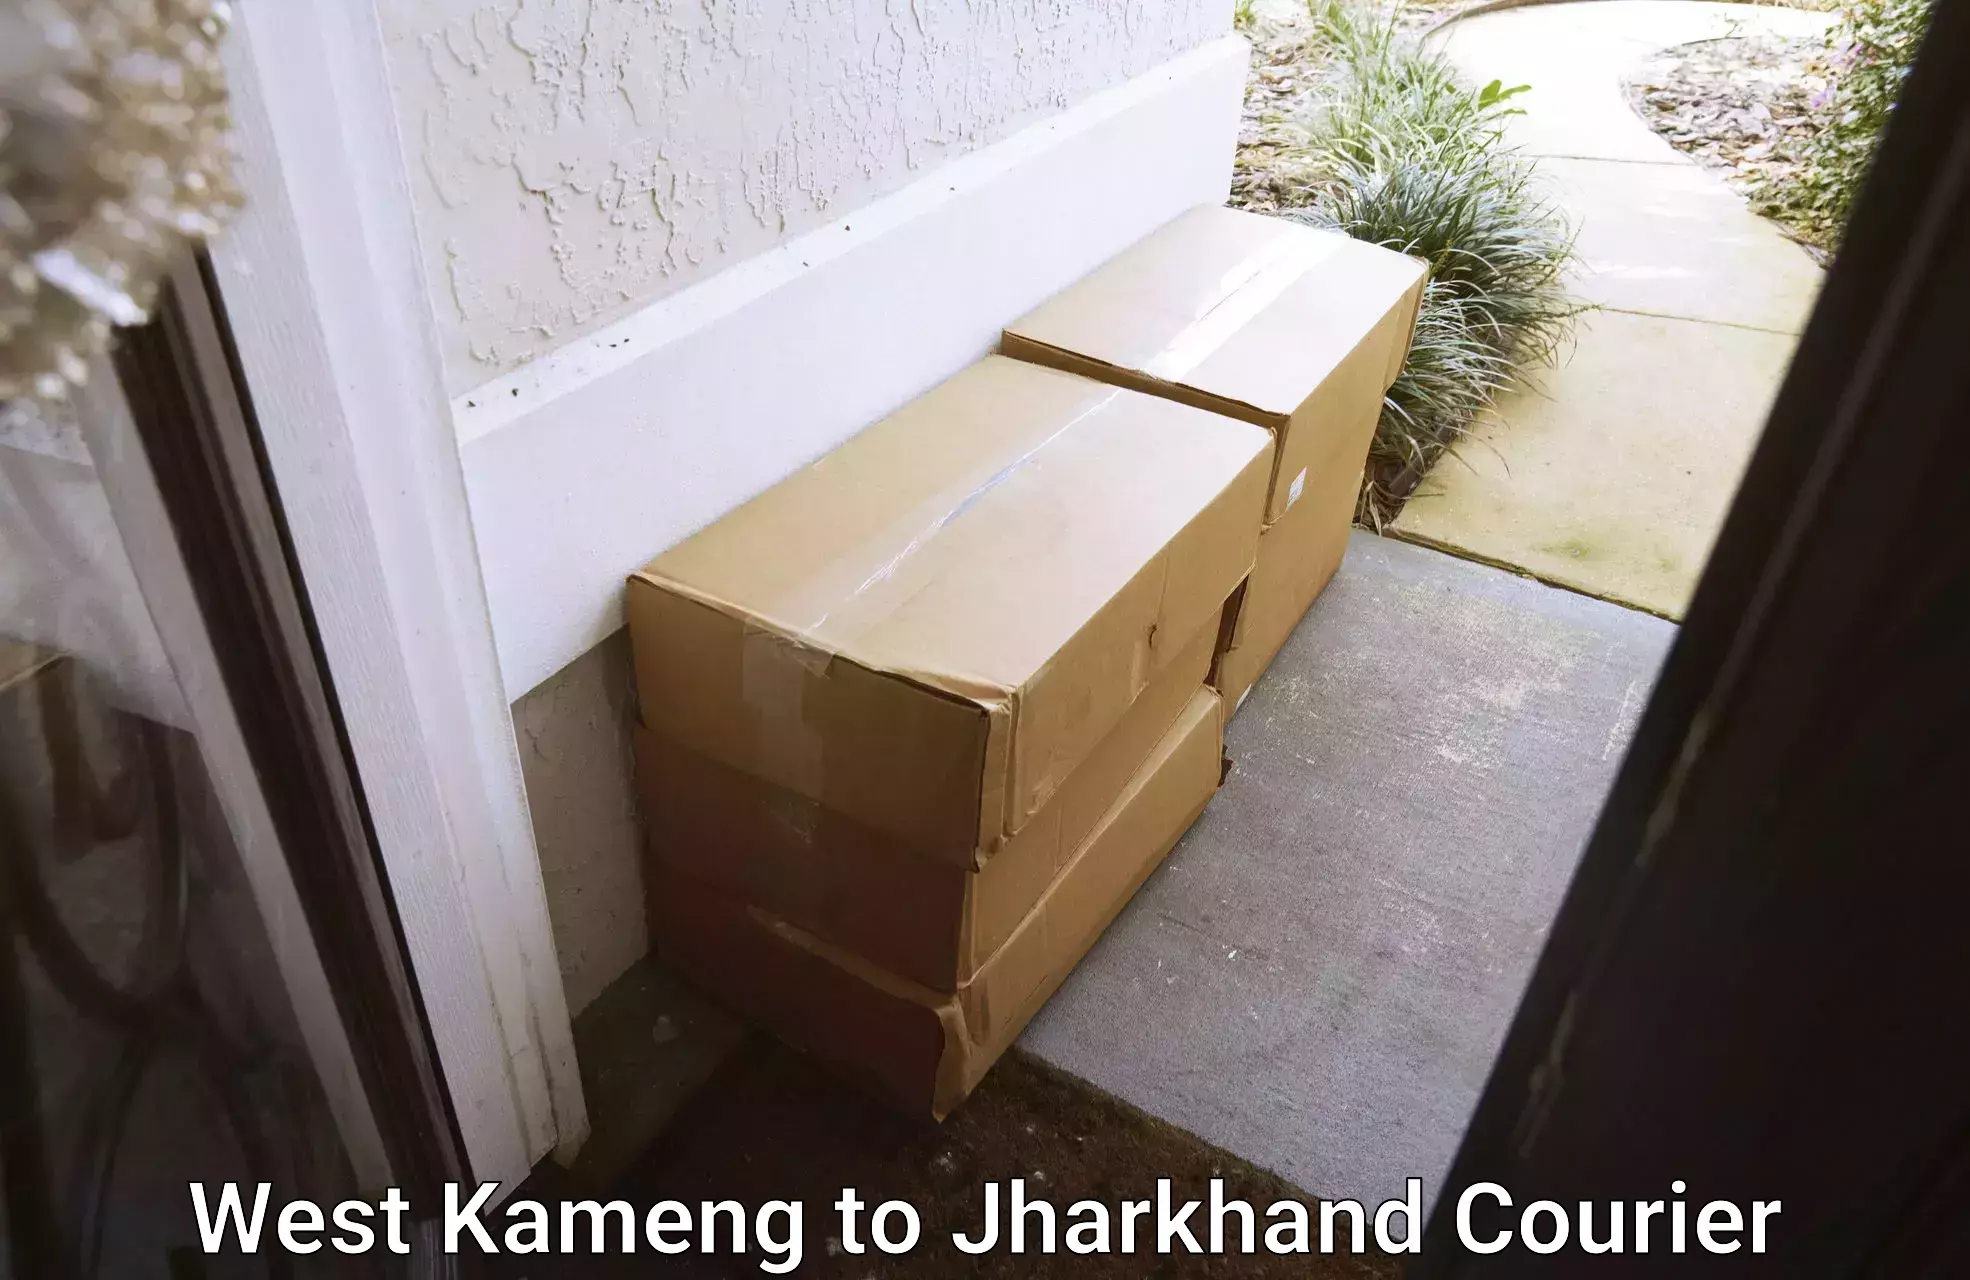 Lightweight parcel options West Kameng to Jamshedpur